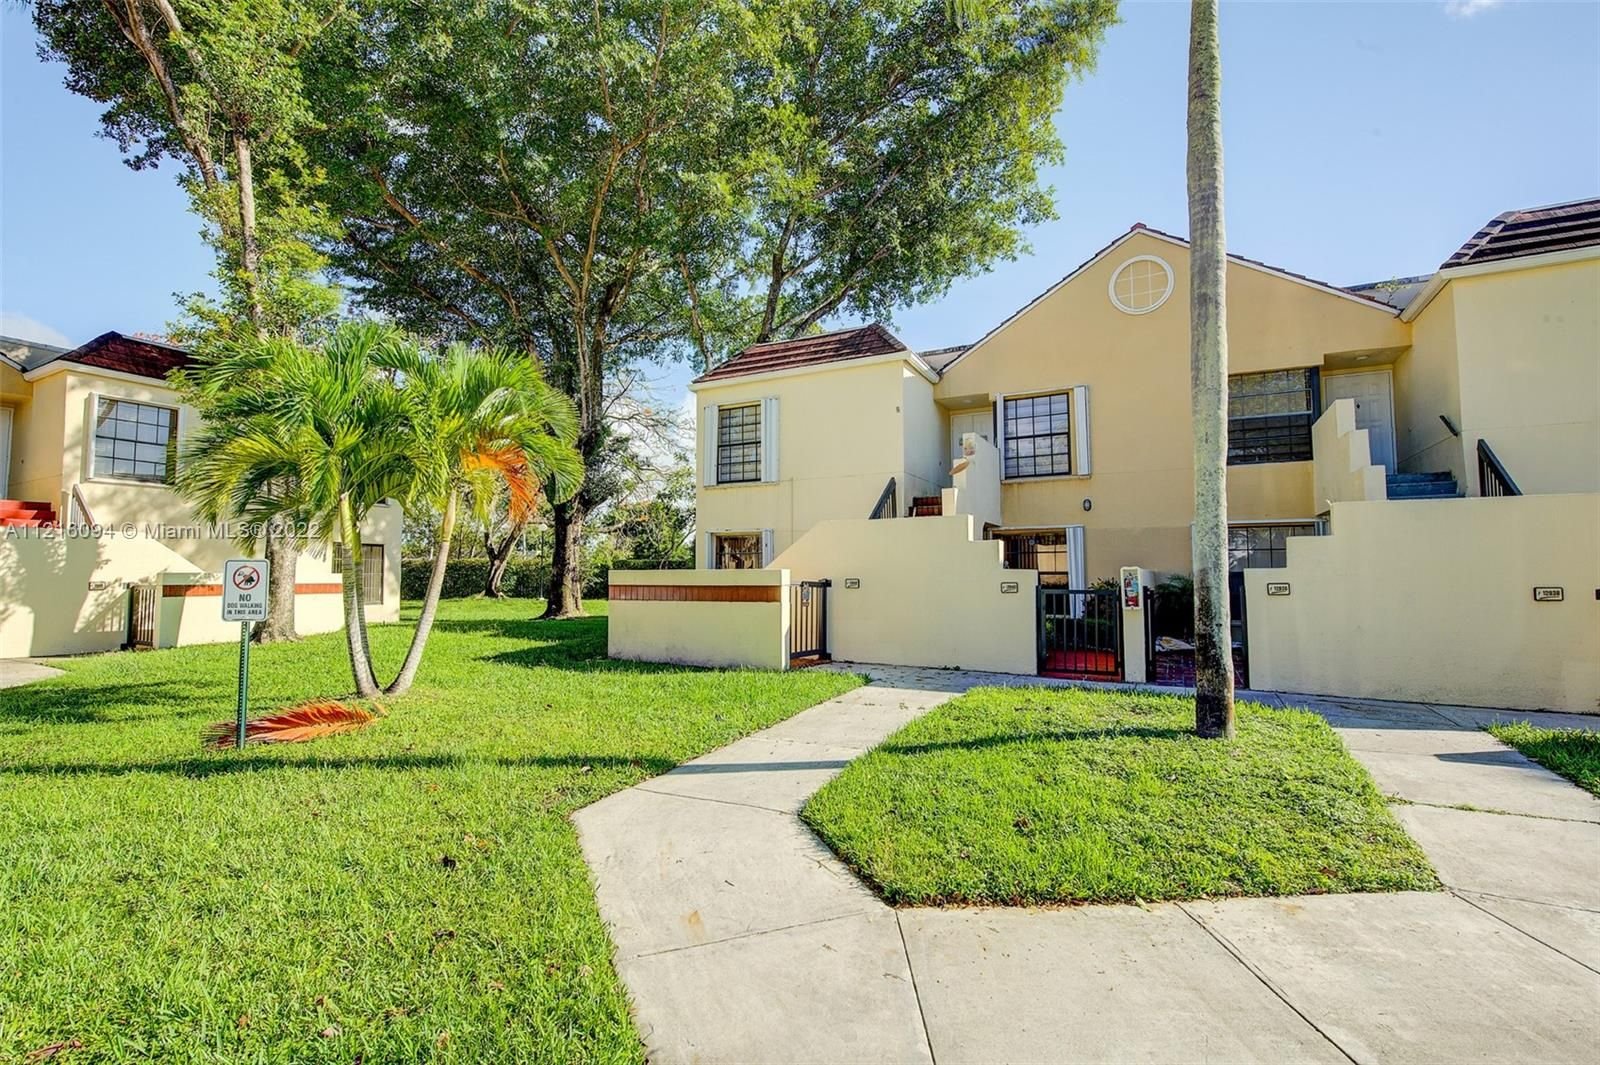 Real estate property located at 12940 88th Ln A101, Miami-Dade County, Miami, FL